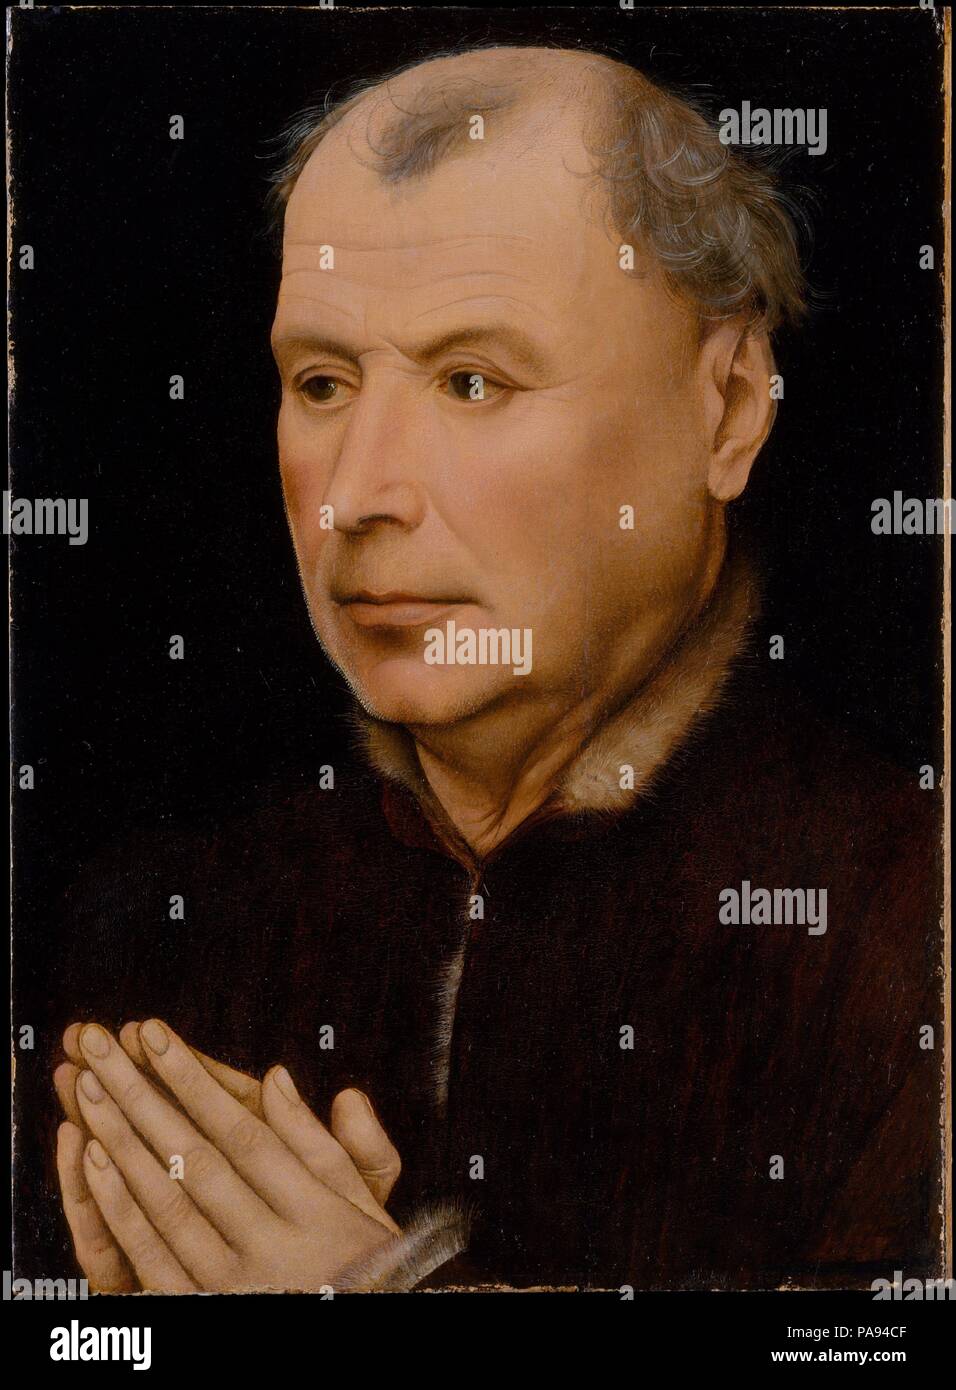 Uomo di preghiera. Artista: laboratorio di Robert Campin (Netherlandish, ca. 1375-1444 Tournai). Dimensioni: complessivamente 12 1/2 x 9 1/8 in. (31,8 x 23,2 cm); superficie dipinta 12 1/2 x 9 in. (31,8 x 23 cm). Data: ca. 1430-35. Questo sitter unisce le sue mani in preghiera, di contemplare ciò che deve essere stata una immagine devozionale su di un pannello adiacente, oggi mancante. La rappresentazione delle funzioni è molto sensibile, particolarmente il rendering delle sfumature della bocca, l'età linee del fronte e le stoppie bianco visibile lungo il contorno della guancia sinistra. Il ritratto è stilisticamente simile a opere di entrambi Robert Camp Foto Stock